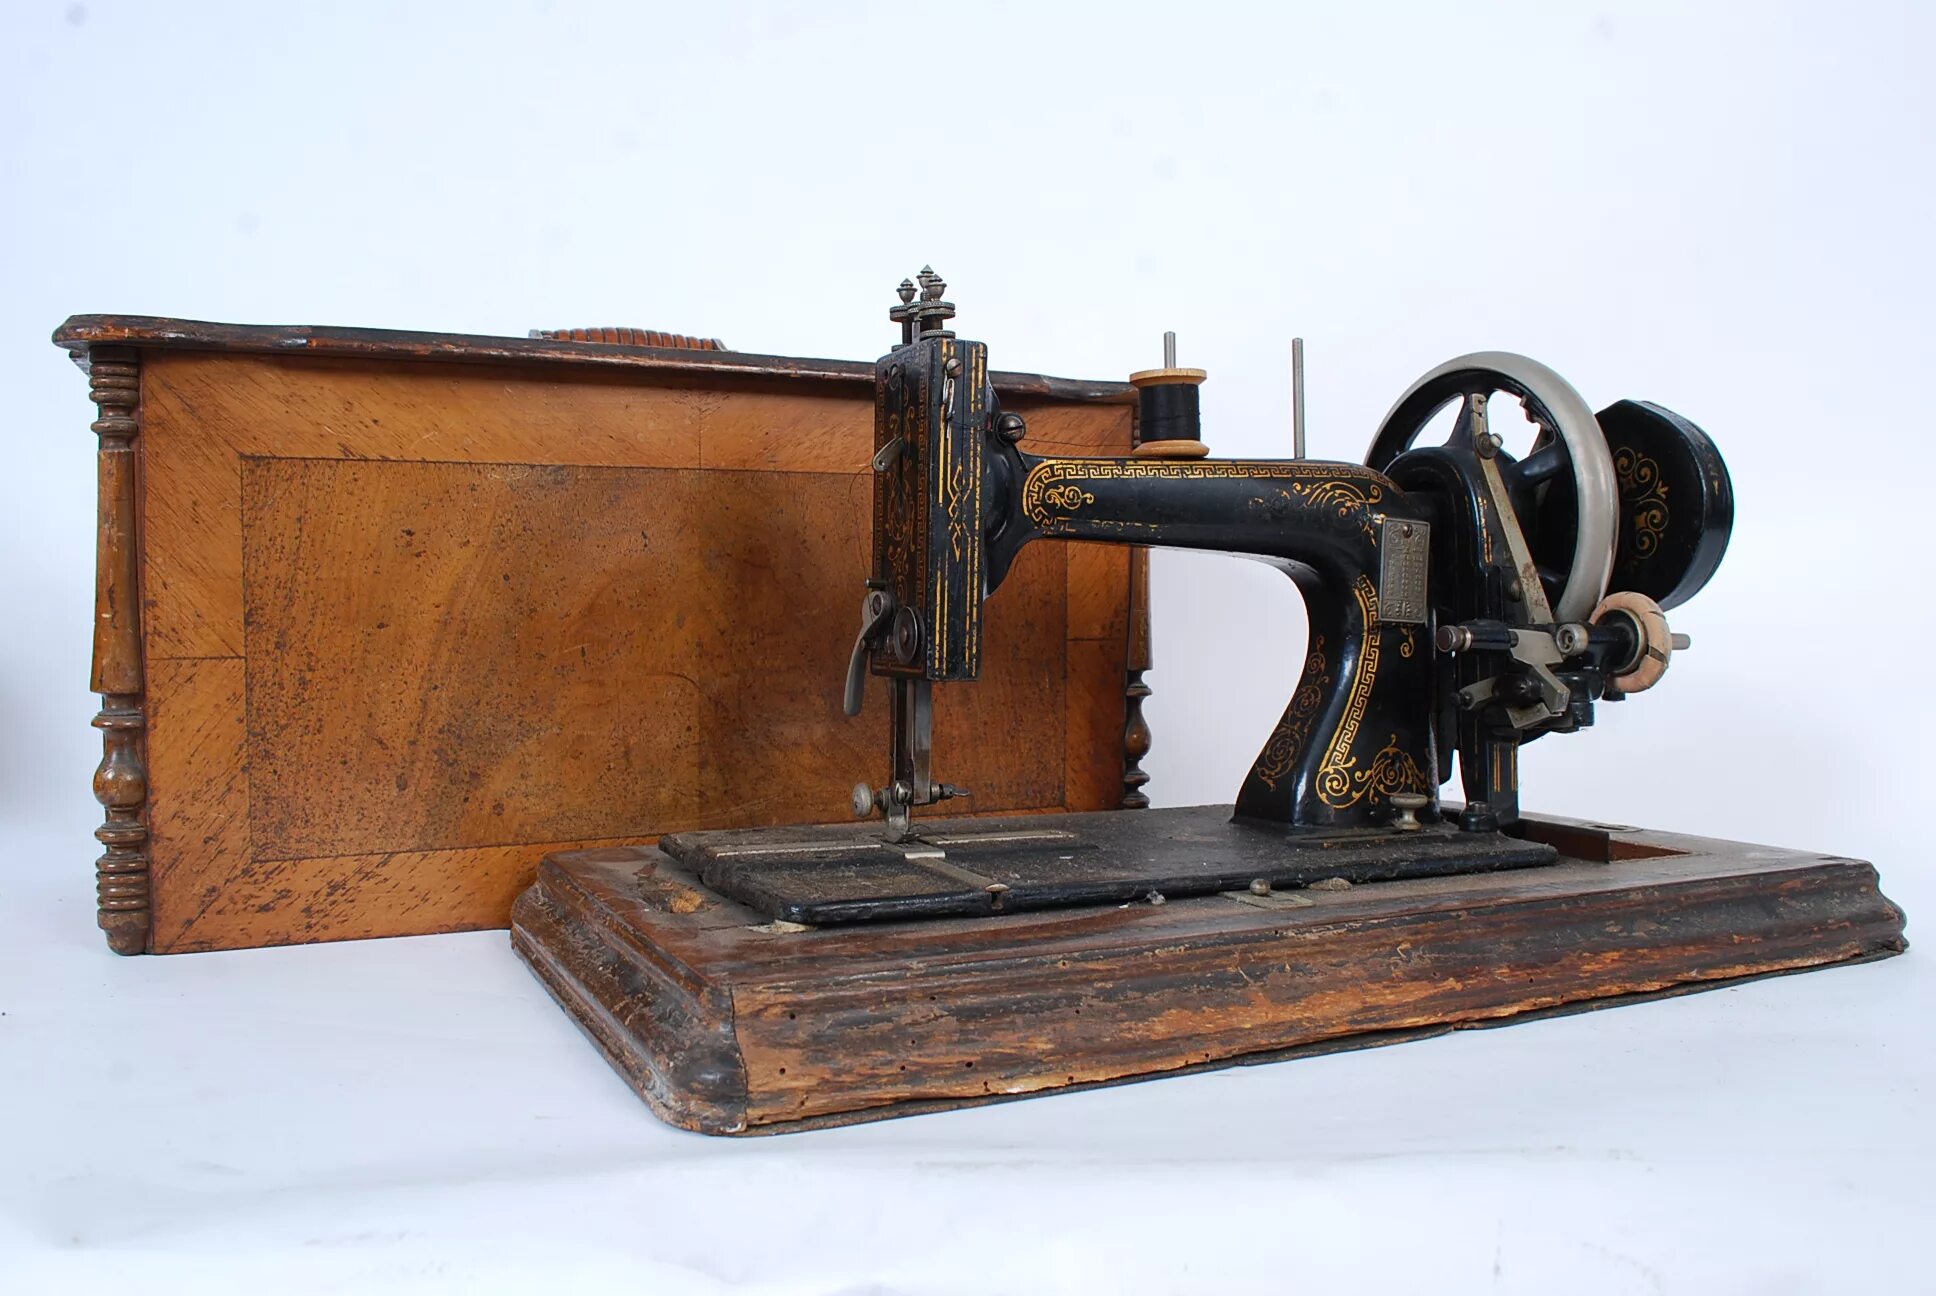 Швейная машинка 18. Швейная машинка Зингер 19 век. Швейная машина 19 века Зингер. Первая швейная машинка Зингер 19 века.